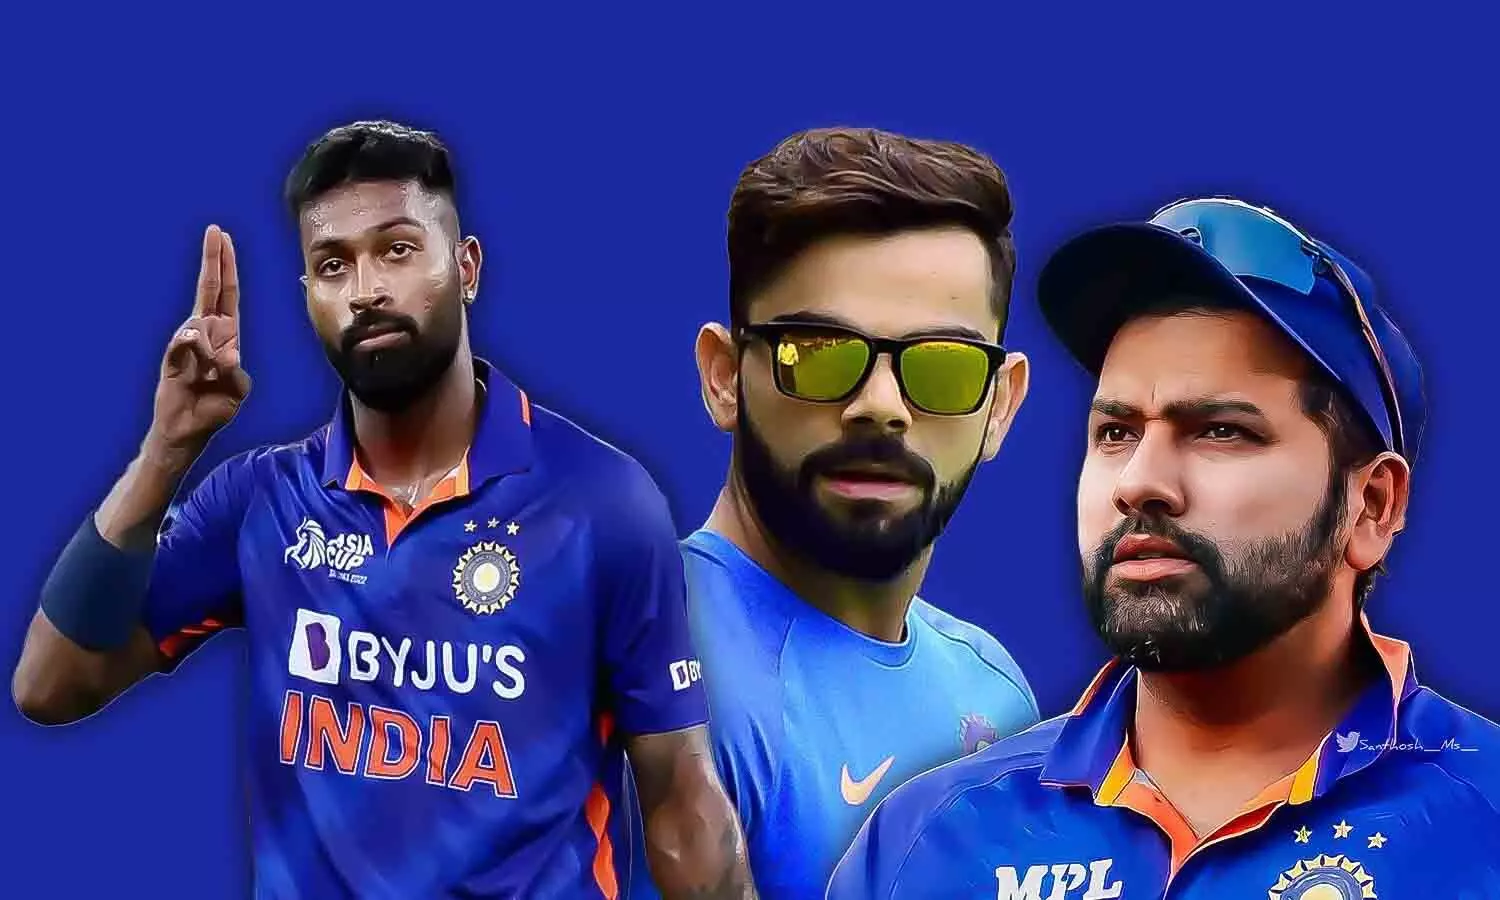 श्रीलंका के खिलाफ टीम इंडिया का ऐलान: श्रीलंका के खिलाफ टी-20 में कप्तानी करेंगे हार्दिक, रोहित-कोहली को आराम; ODI में रोहित संभालेंगे टीम इंडिया का नेतृत्व